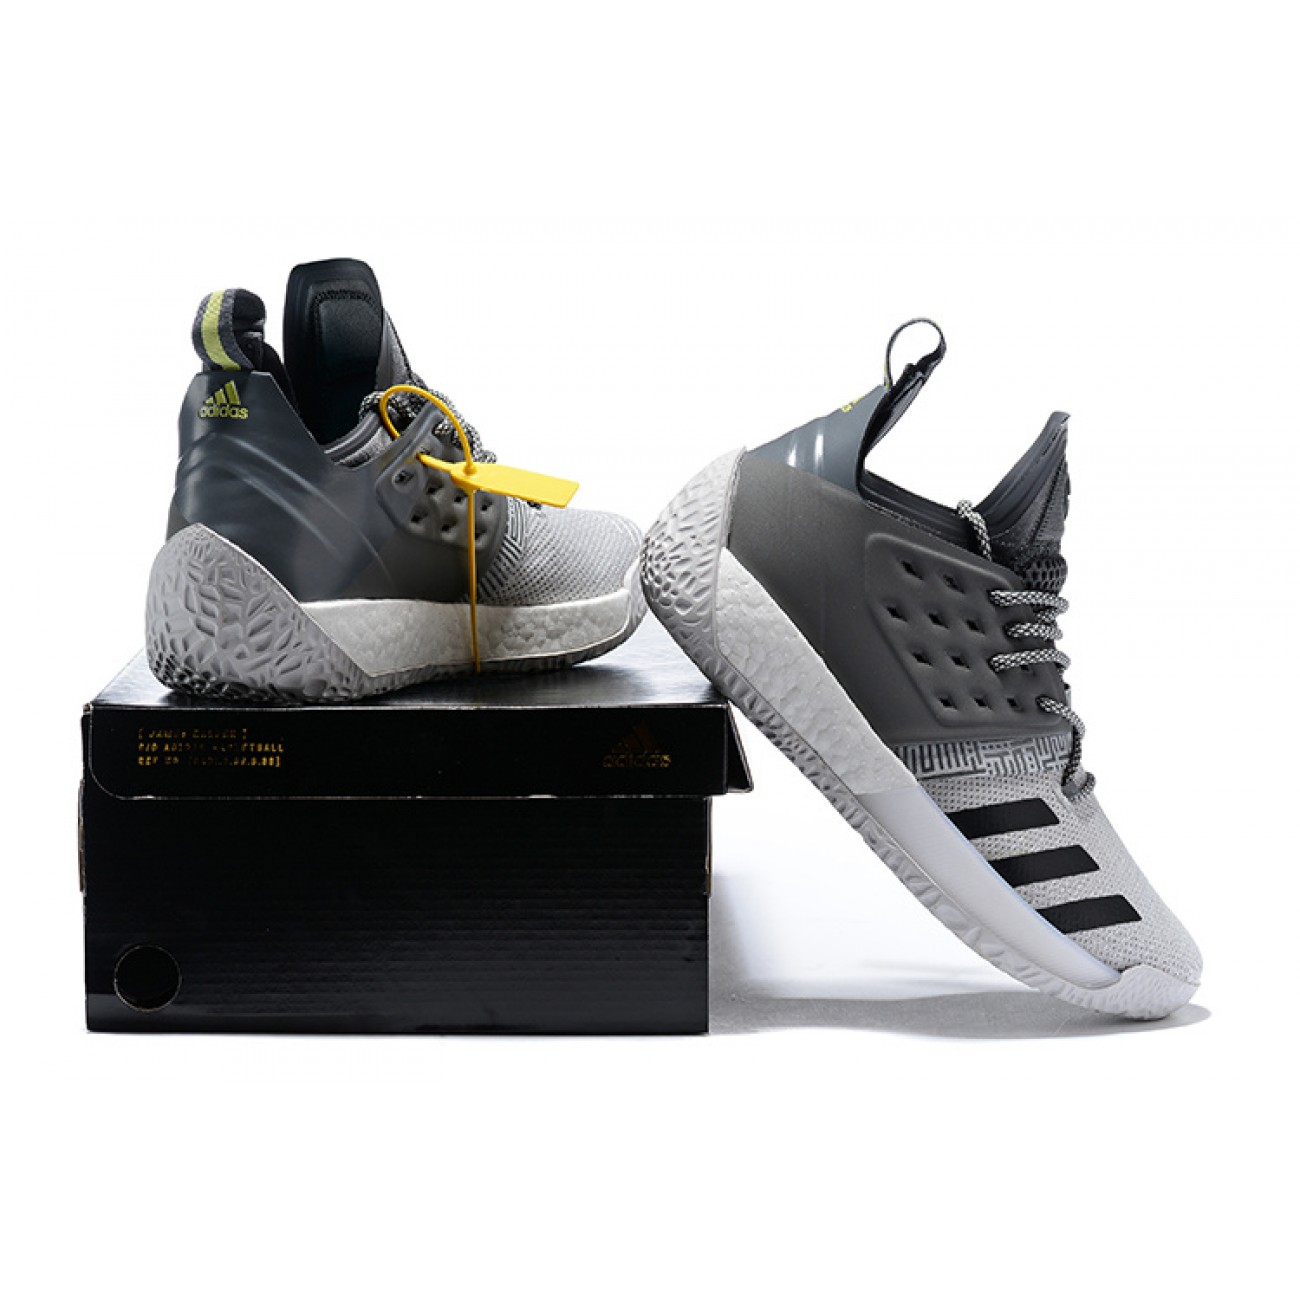 Adidas Harden Vol.2 "Concrete" Black/Grey